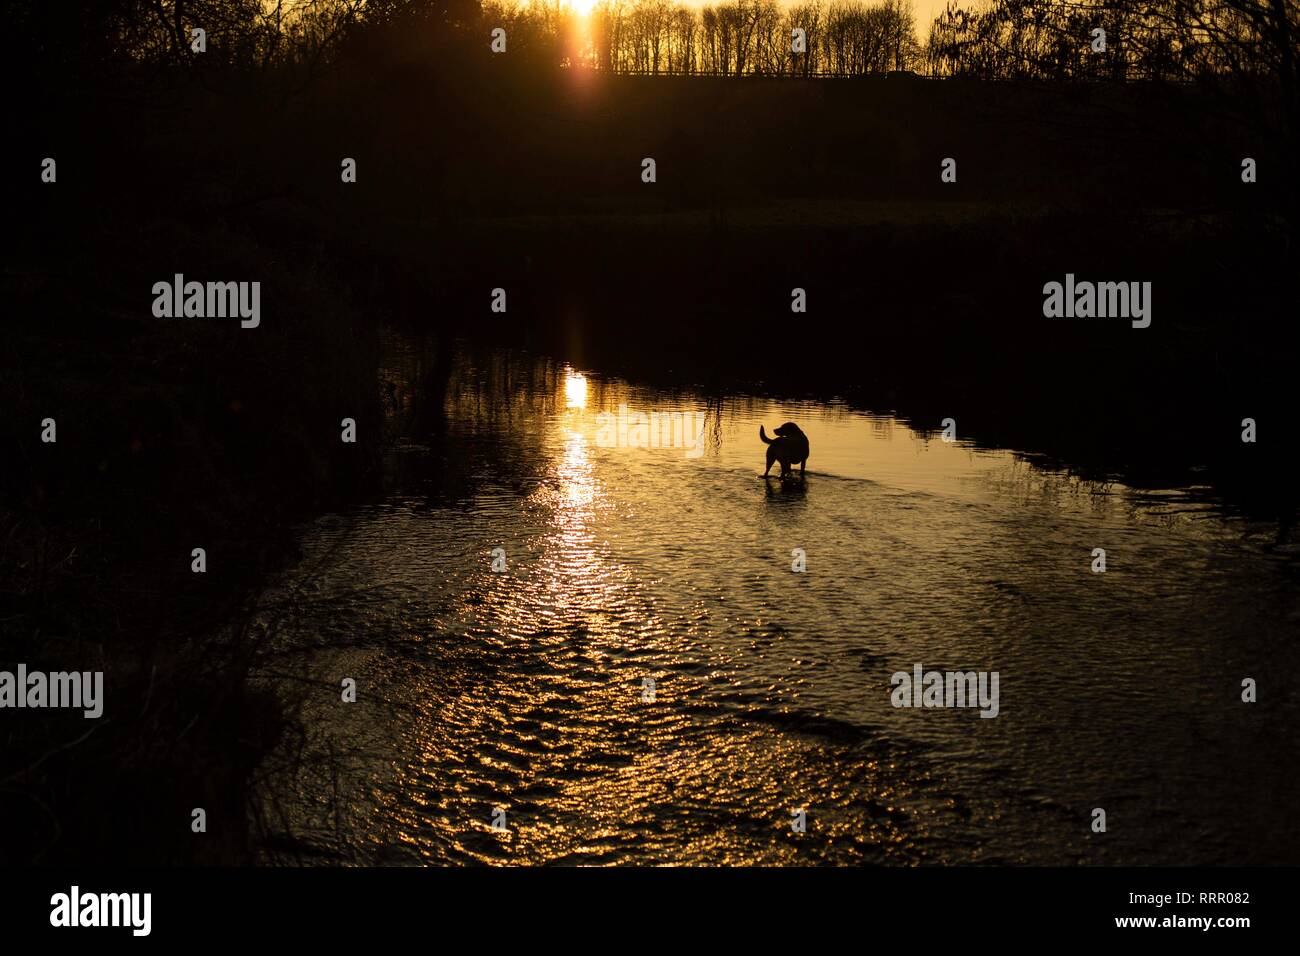 Cardiff, Wales, UK. 26. Februar 2019. Ein Hund erwartet ein geworfen Stick in einem Fluss, da das Vereinigte Königreich seine wärmsten Februar auf Aufzeichnung Erfahrungen. Credit: Mark Hawkins/Alamy leben Nachrichten Stockfoto